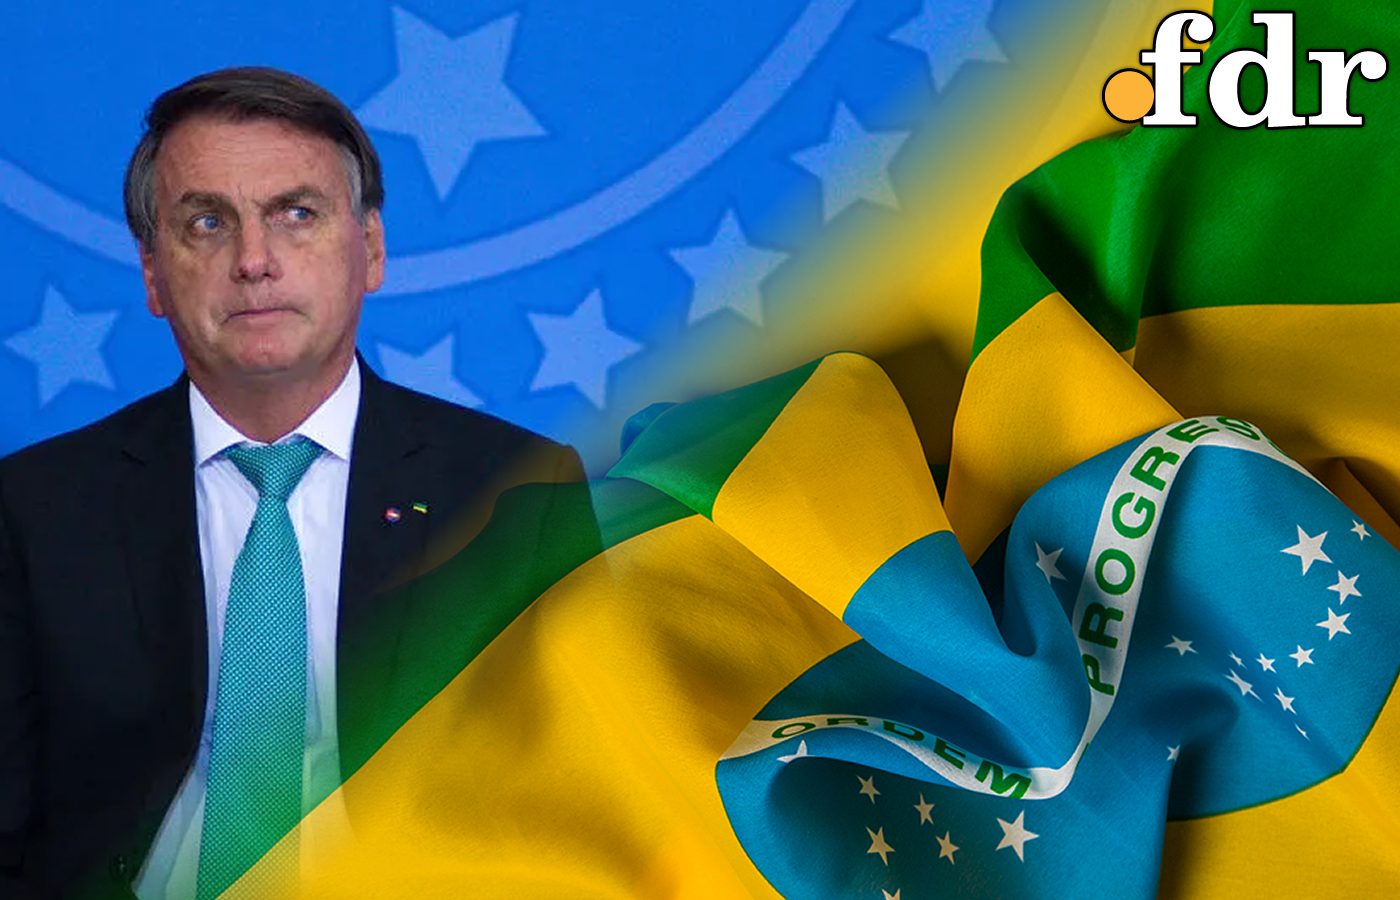 ‘Picanha no Brasil está metade do valor do que no Canadá'; descubra se fala de Bolsonaro é verídica